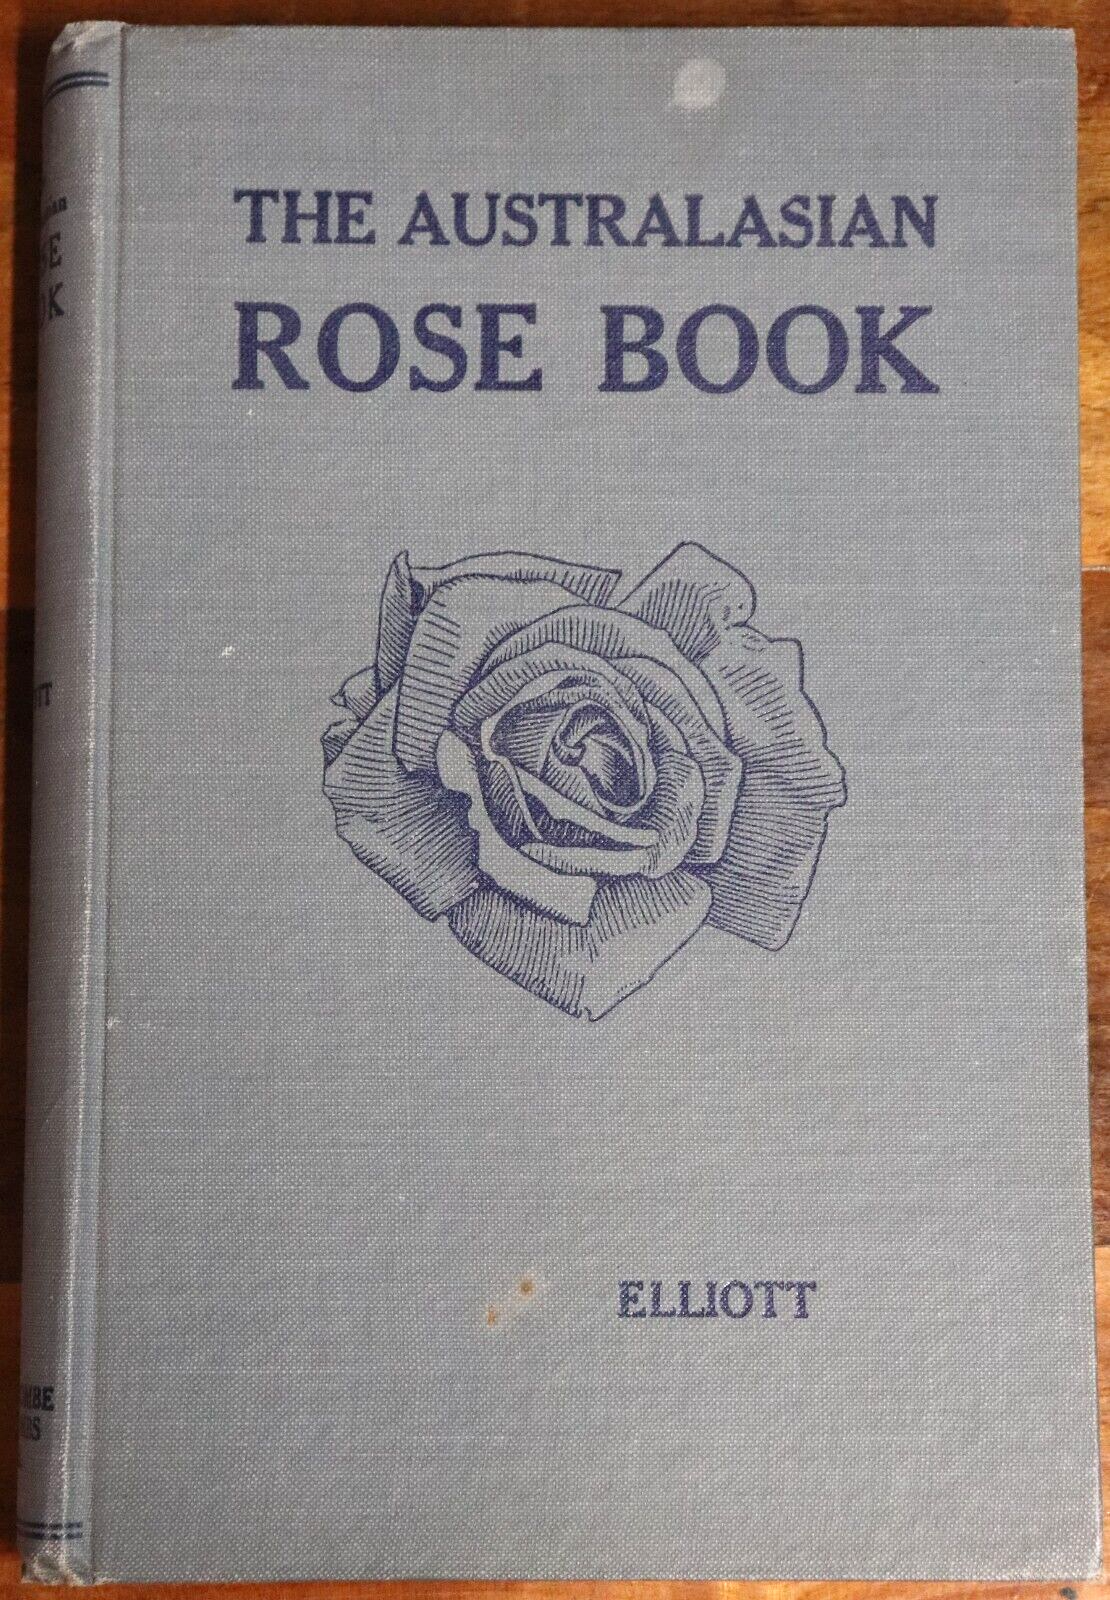 c1920 The Australasian Rose Book R.G. Elliott 1st Ed Gardening Reference Book